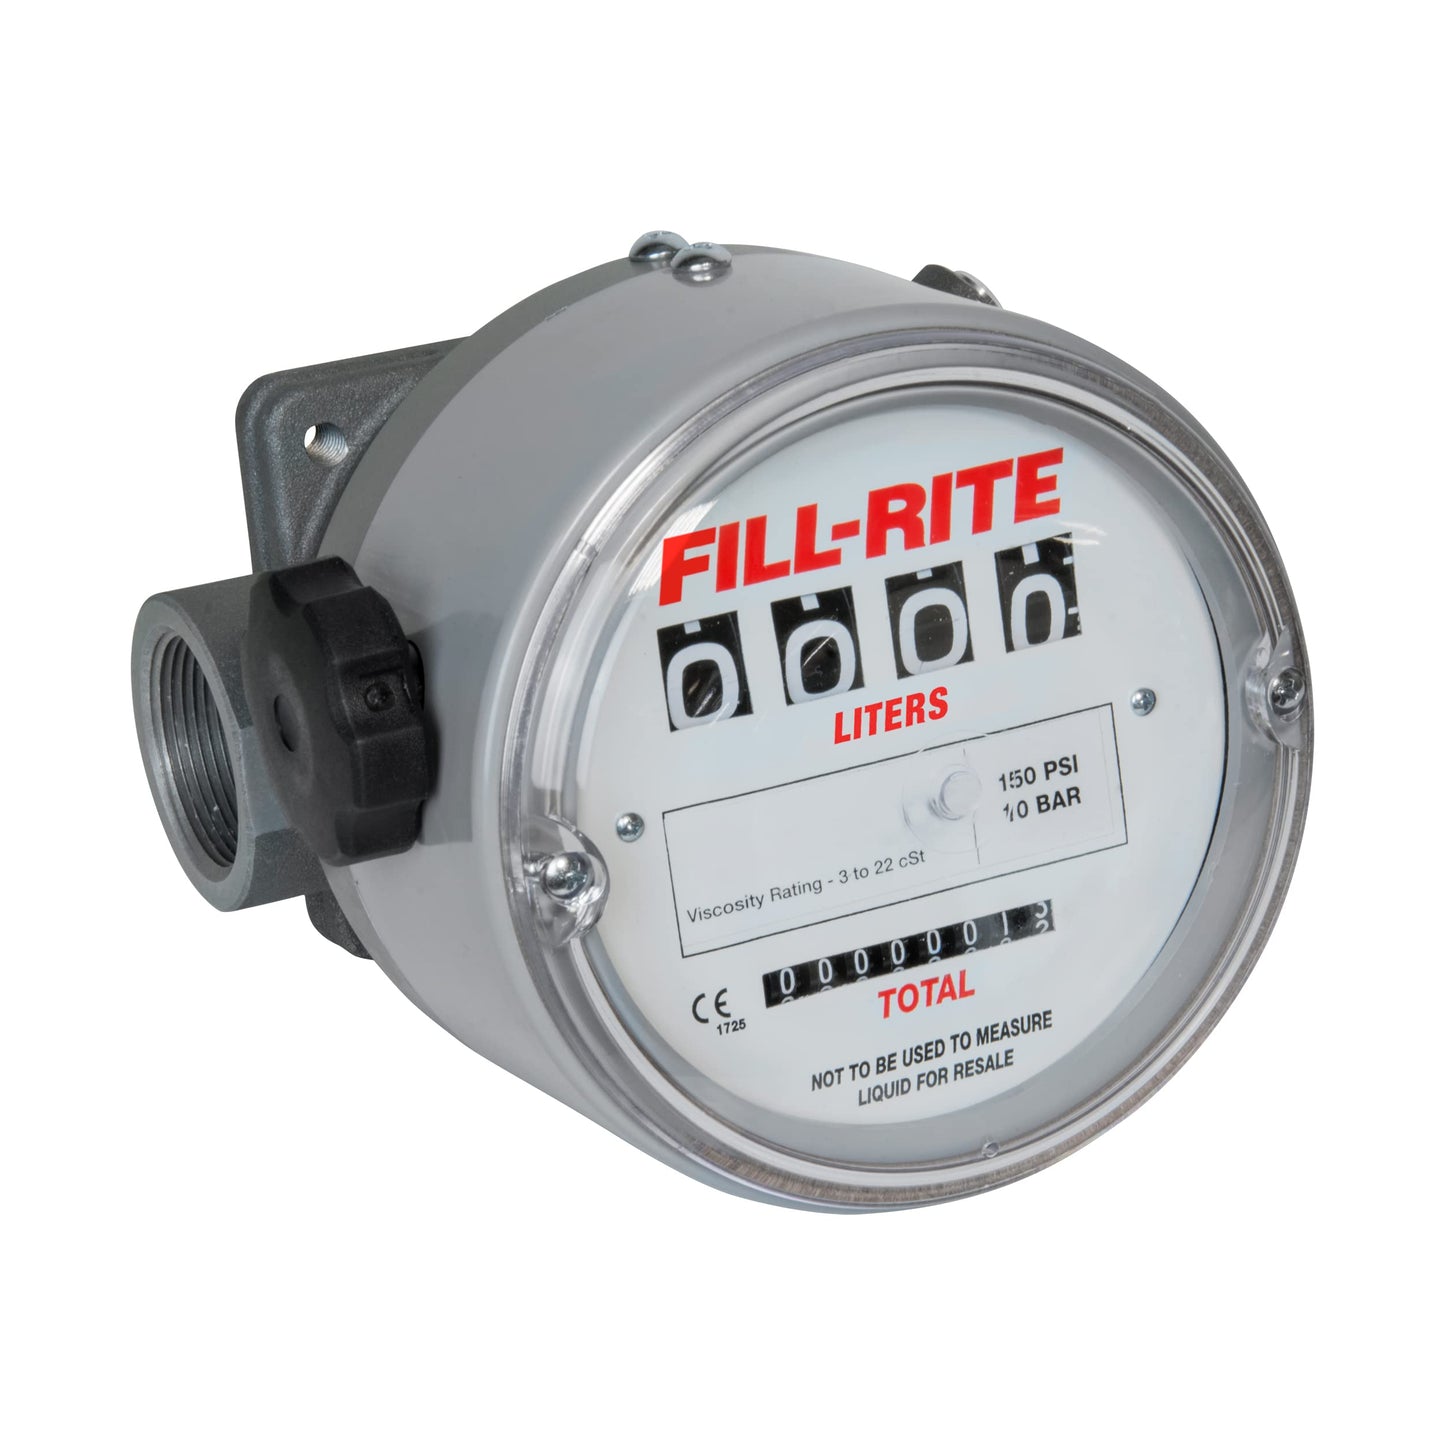 Fill-rite Flow Meter